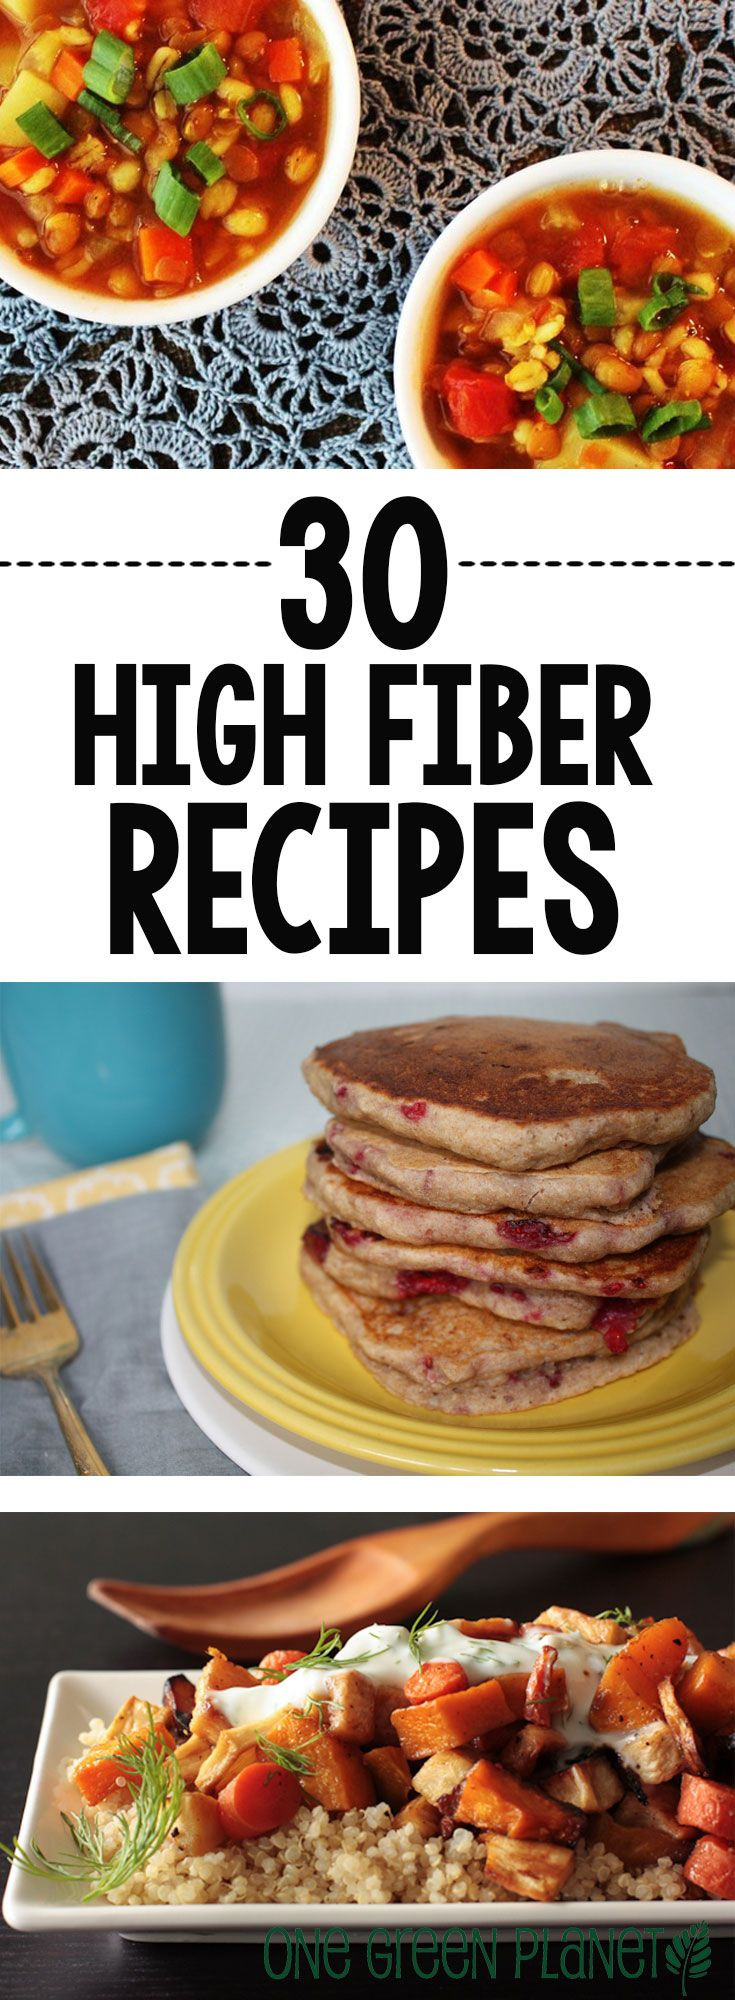 High Fiber Dinner Recipes
 30 Vegan High Fiber Recipes to Keep Your System Moving